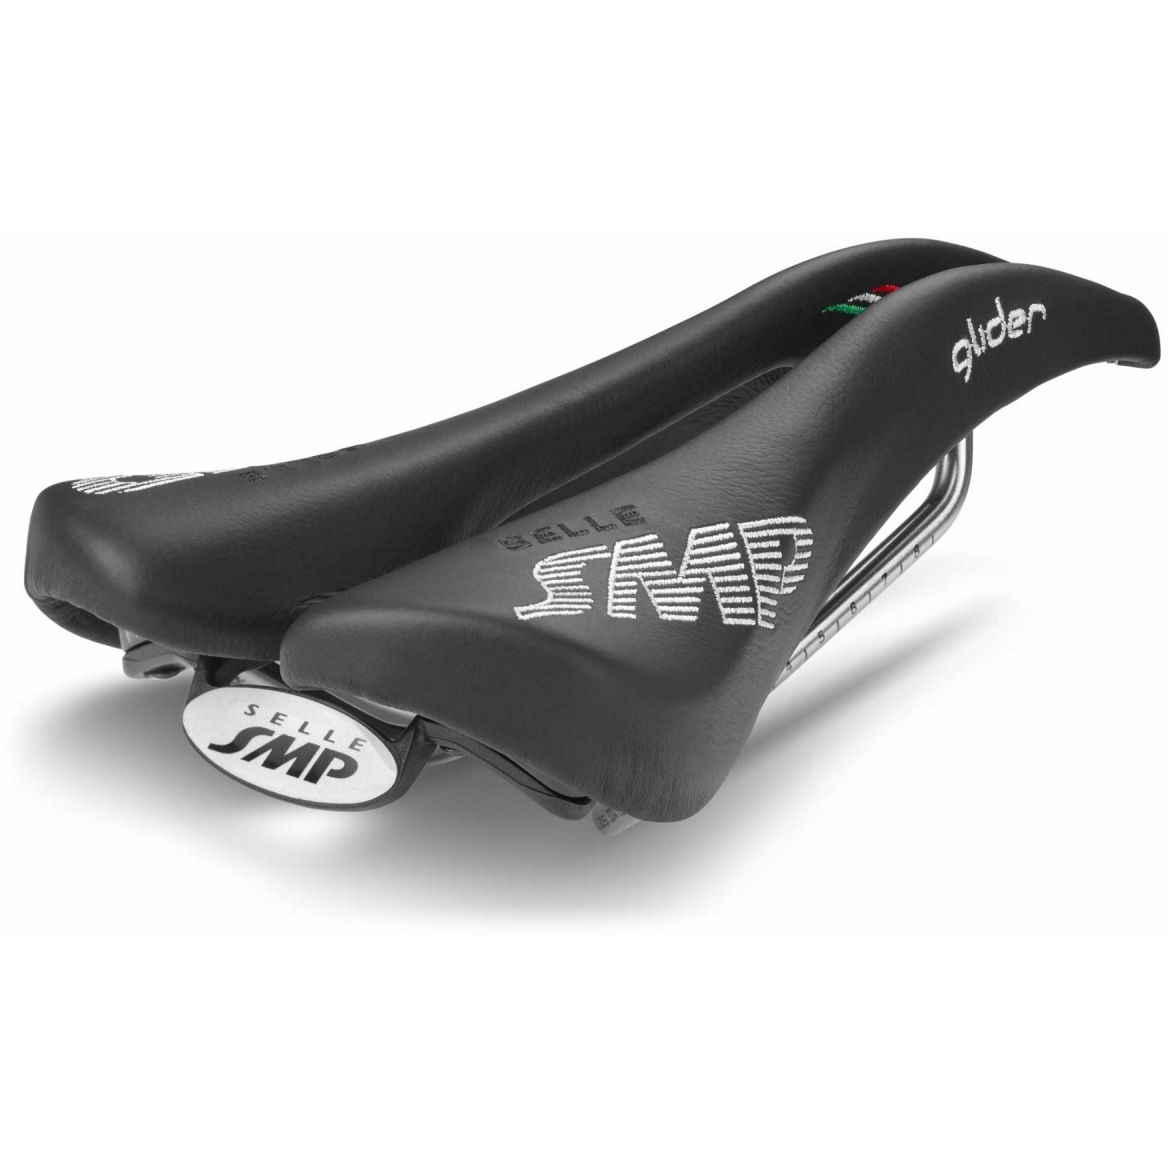 Productfoto van Selle SMP Glider Saddle - black